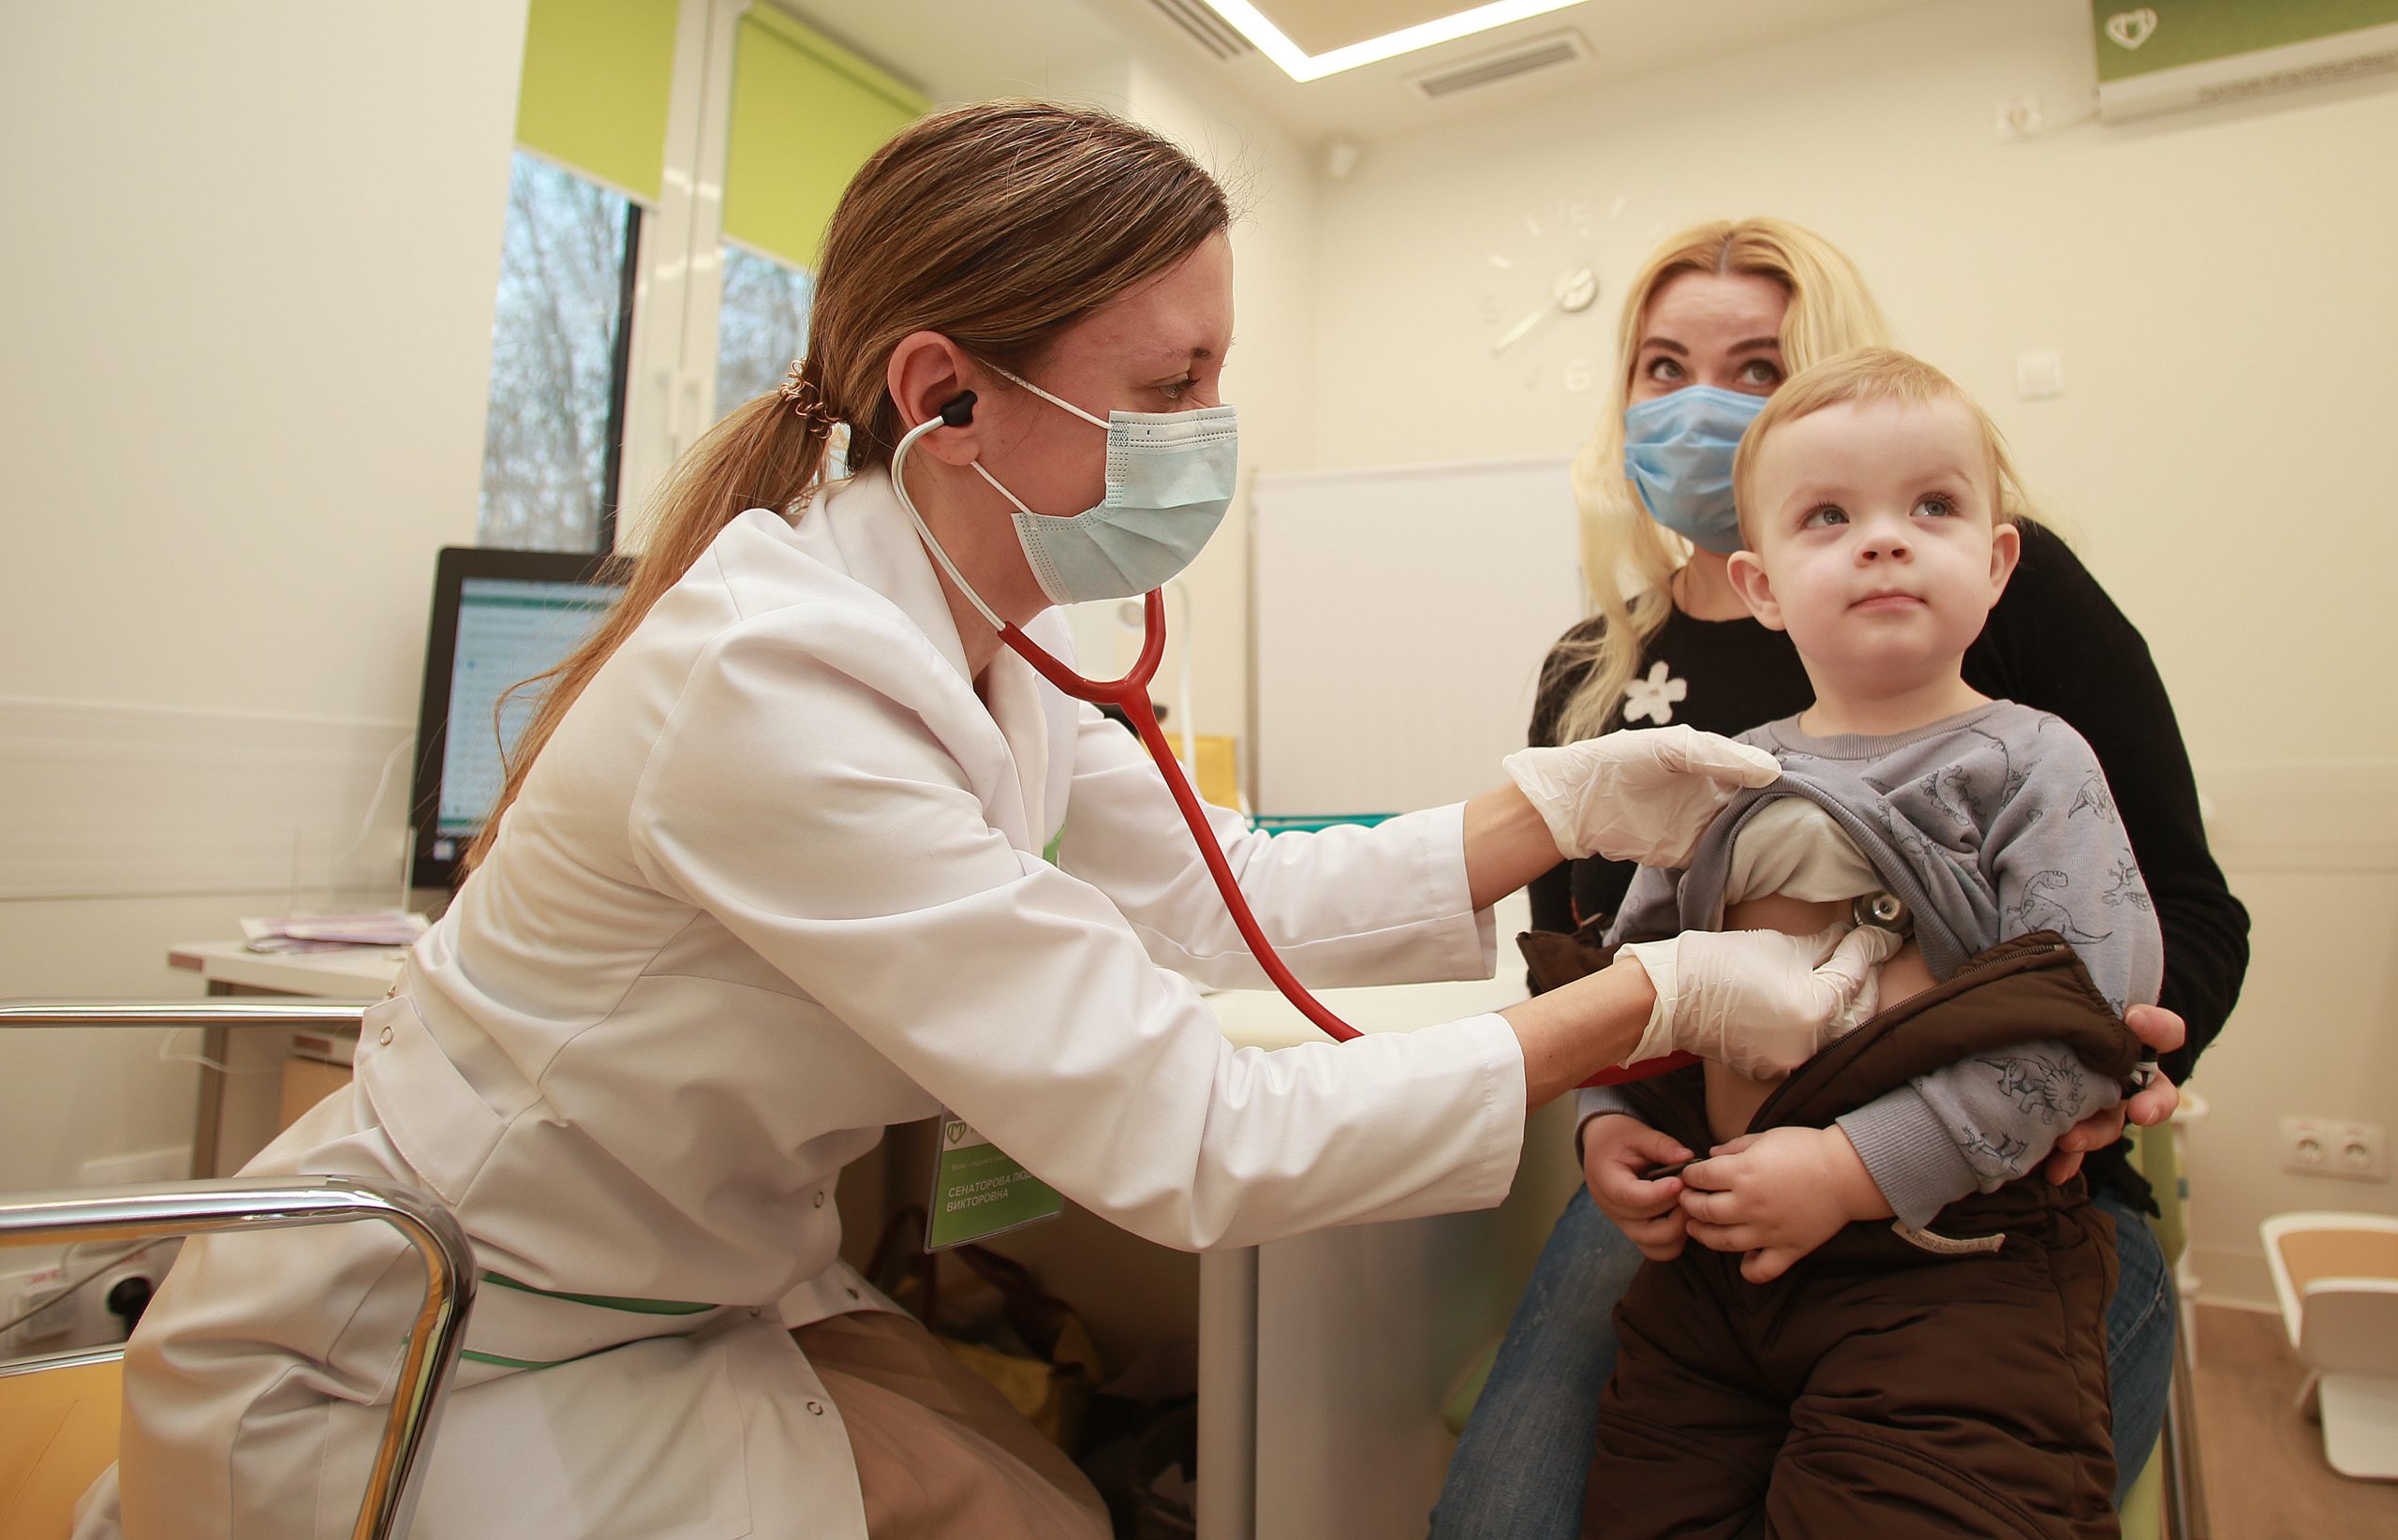 Детско-взрослая поликлиника на 320 посещений в смену появится в Бирюлеве Восточном